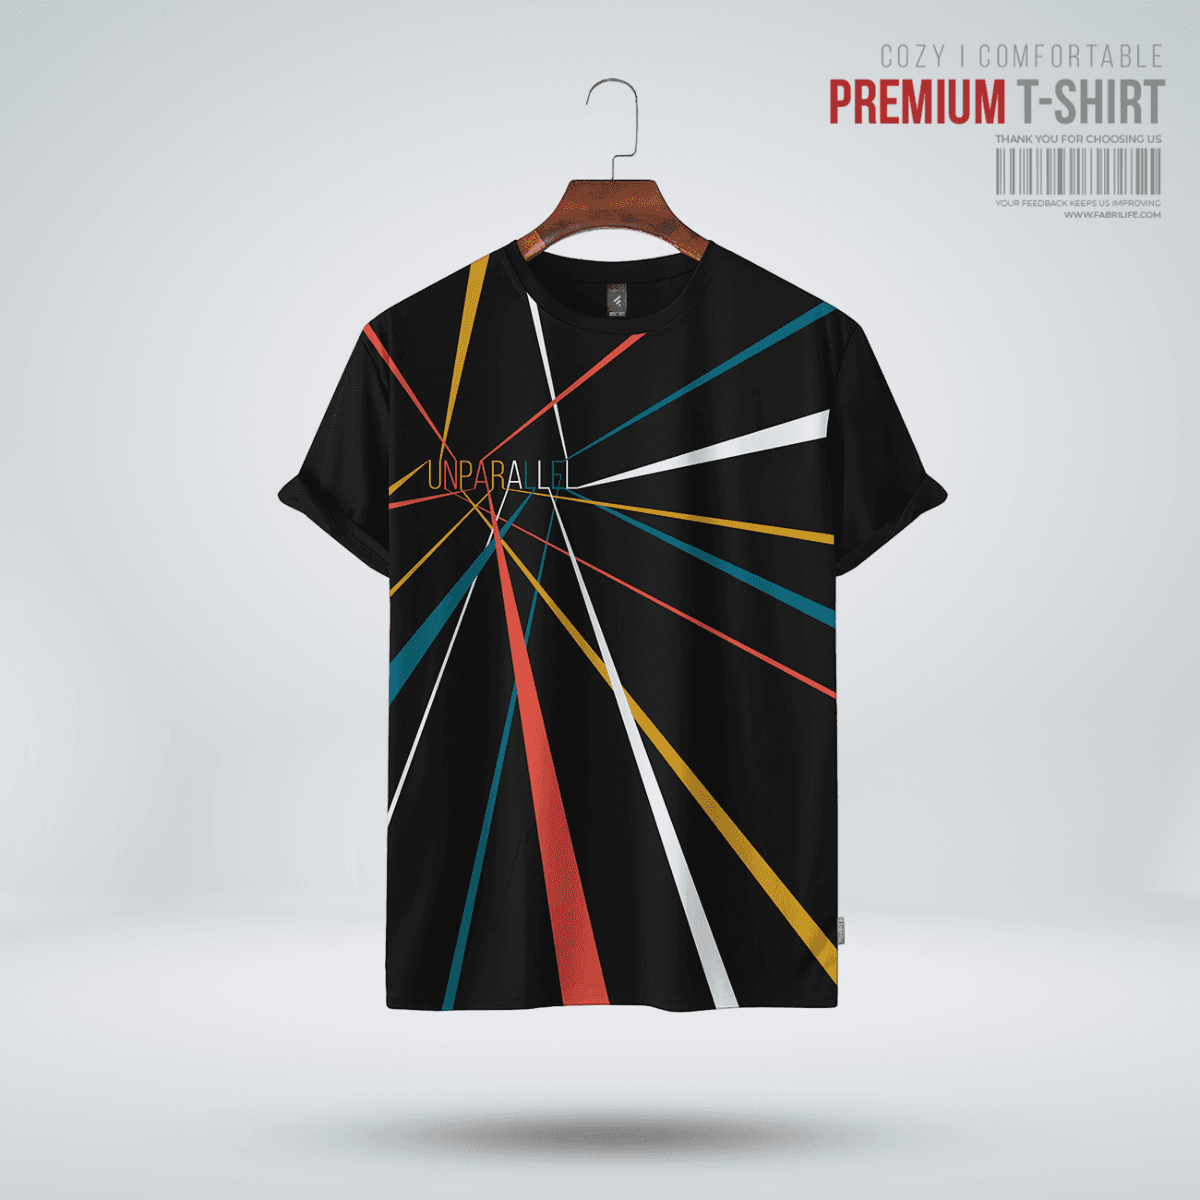 Fabrilife Mens Premium T-shirt - Unparallel